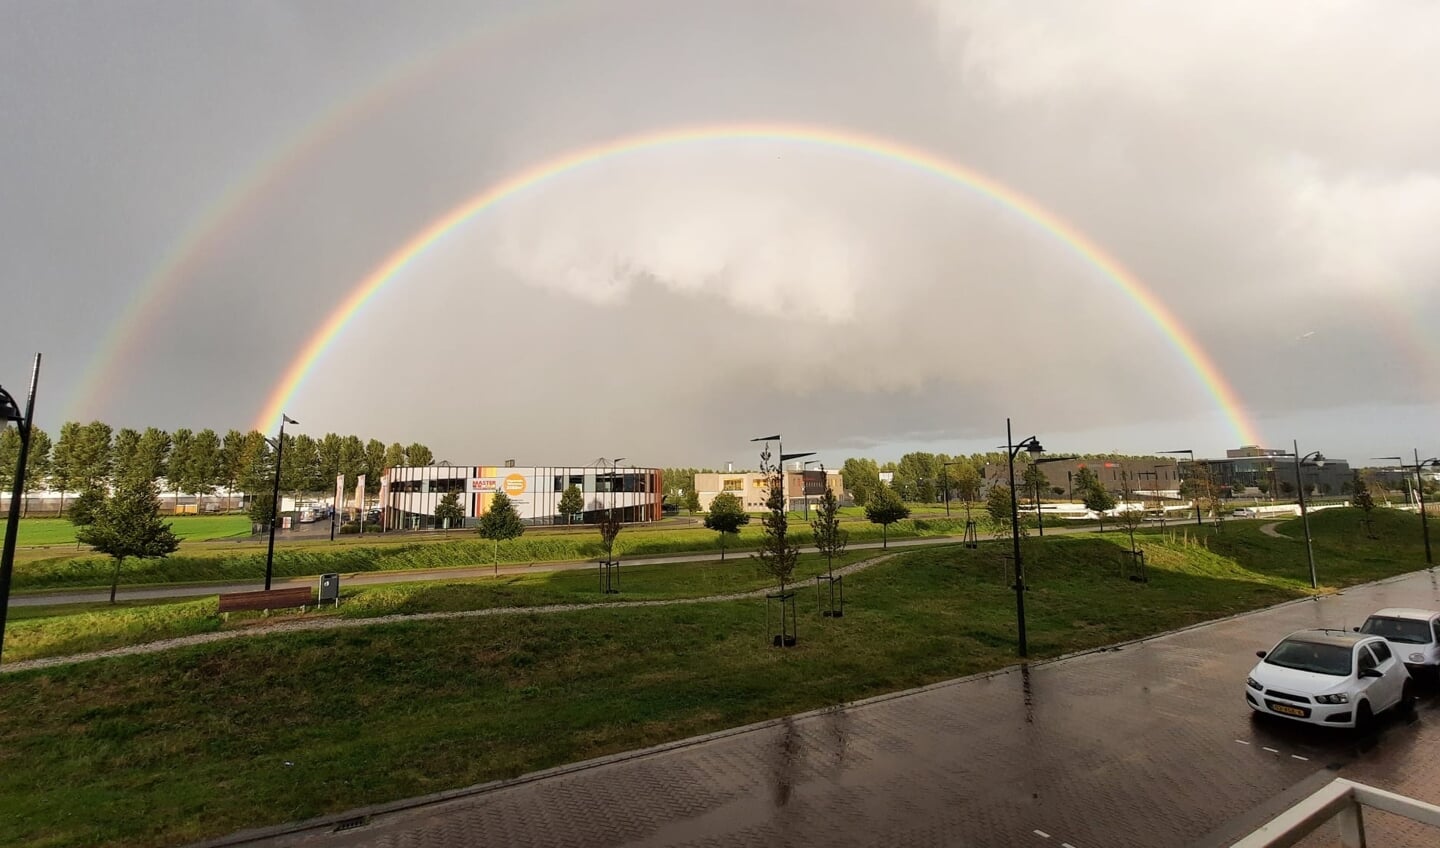 De afgelopen maand waren er meerdere regenbogen te zien in Haarlemmermeer, Lindsay Freije wist er echter twee tegelijk op de foto te zetten. 